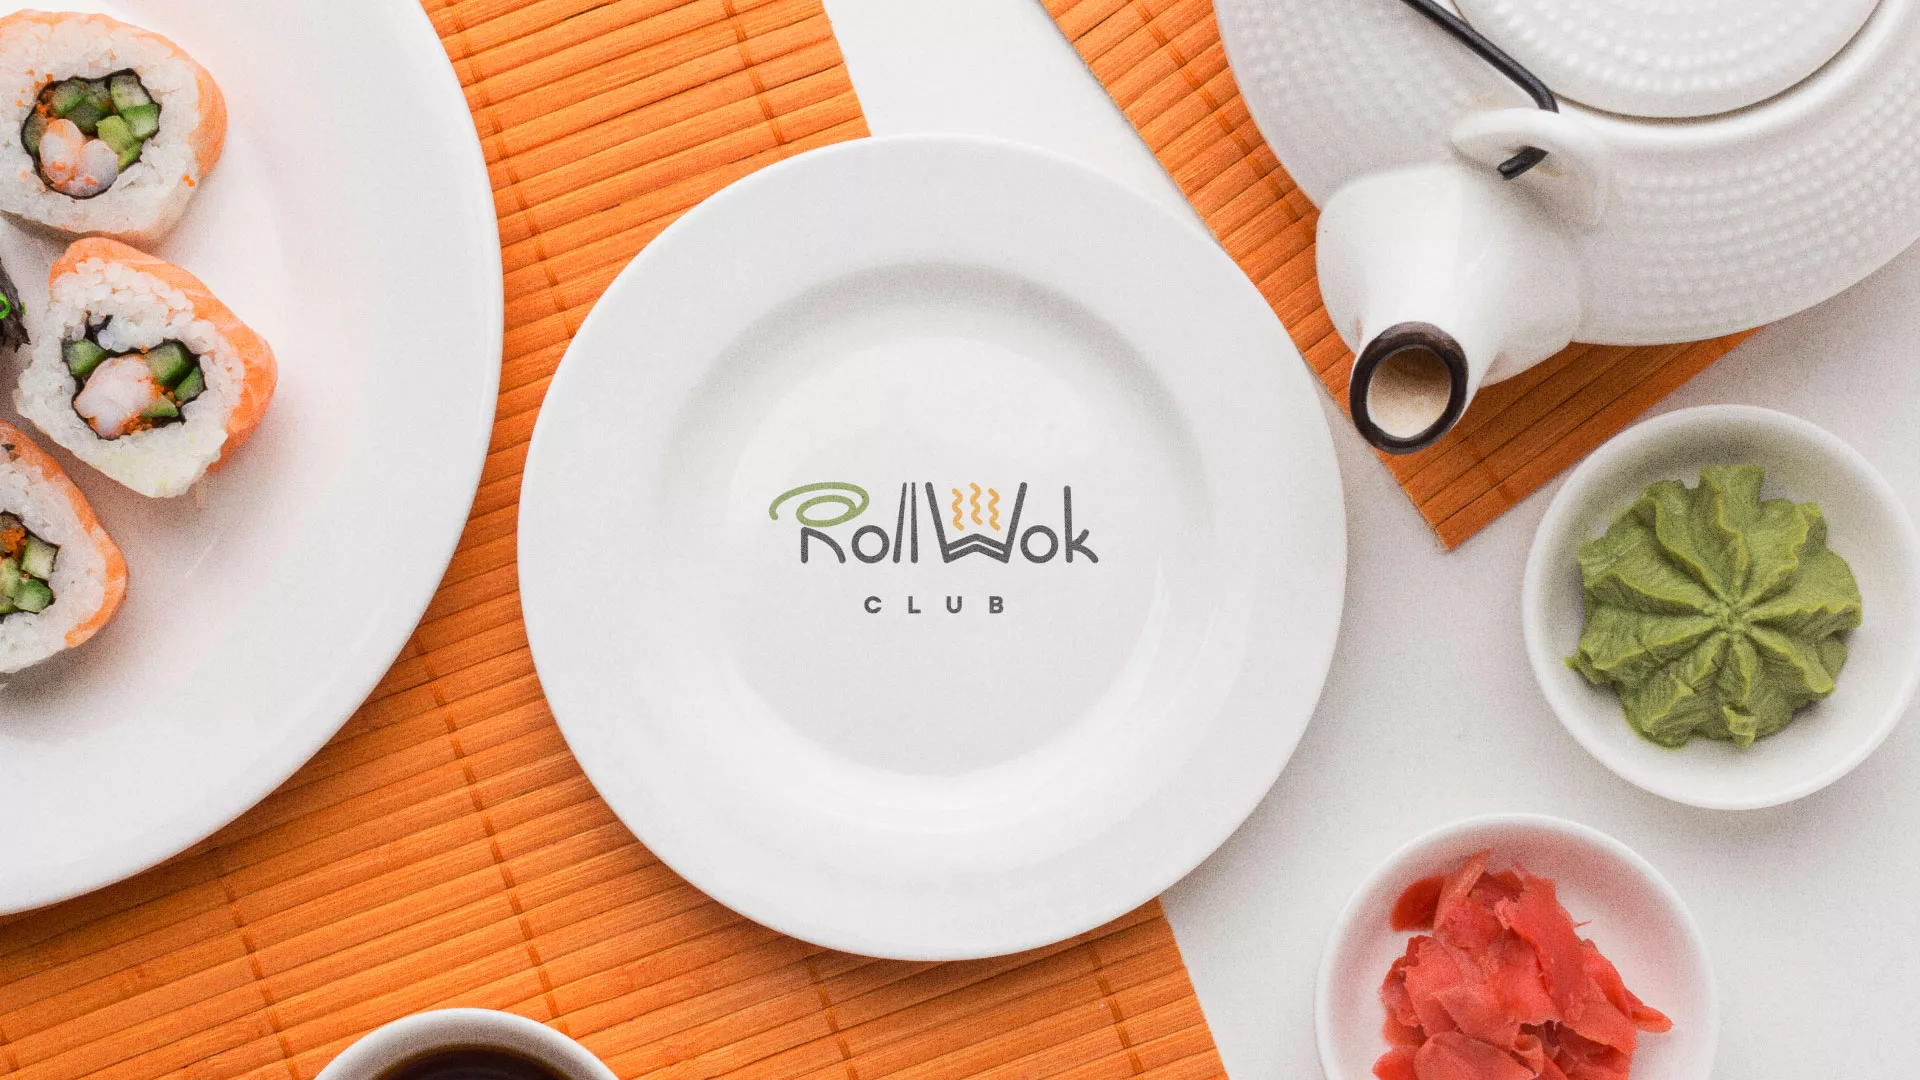 Разработка логотипа и фирменного стиля суши-бара «Roll Wok Club» в Уварово